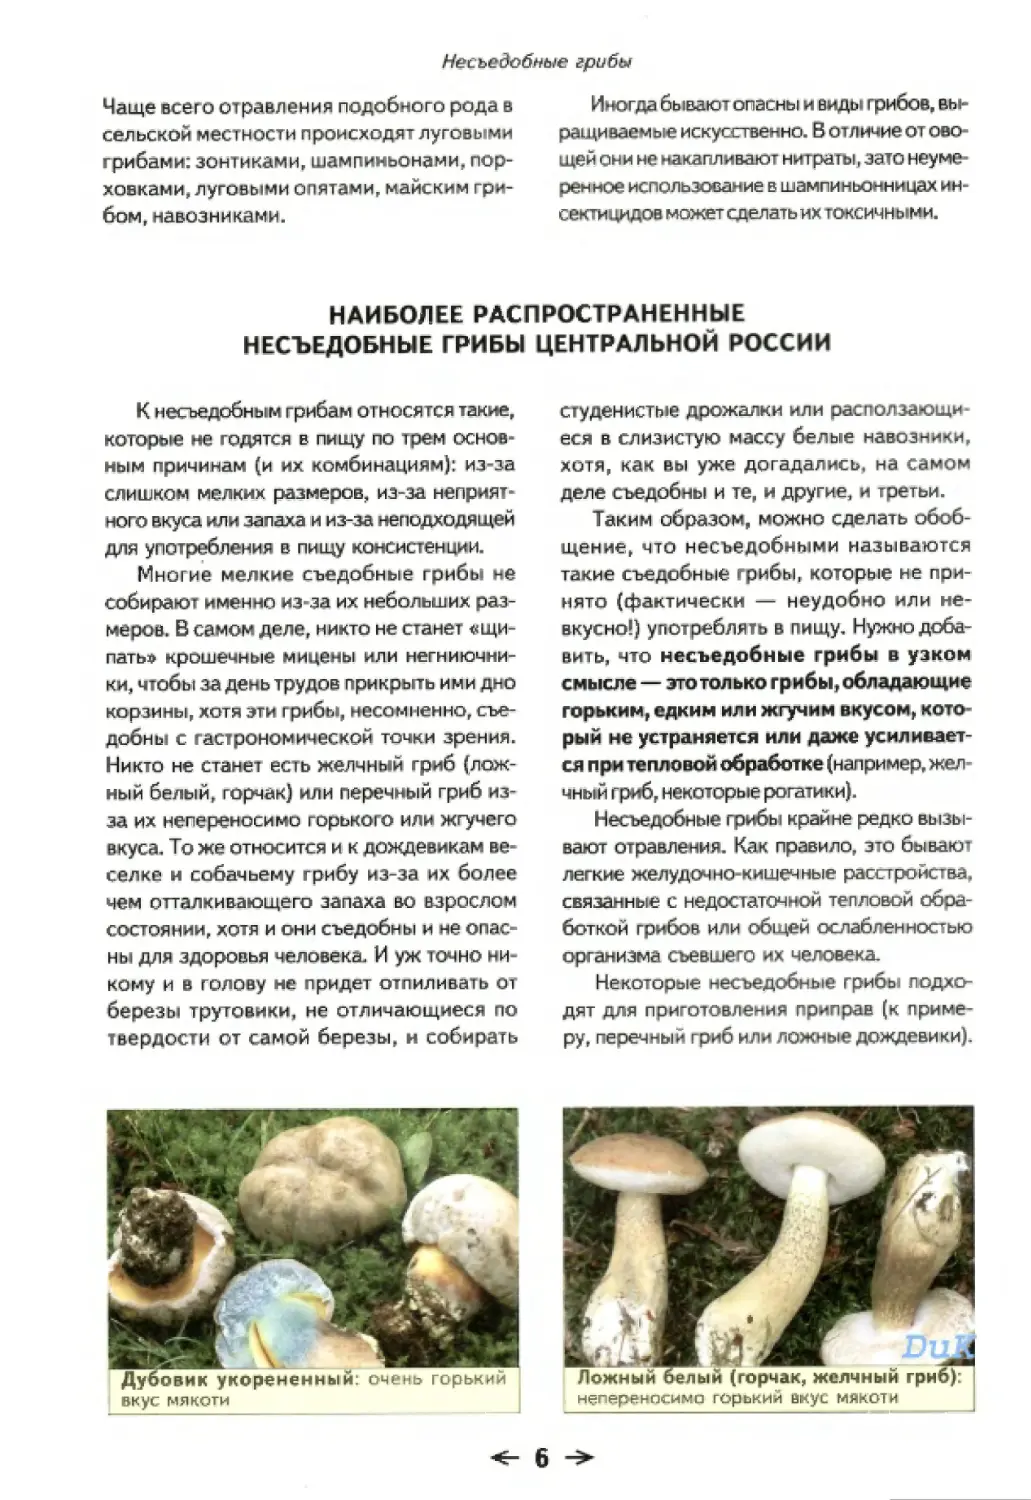 Наиболее распространенные несъедобные грибы Центральной России